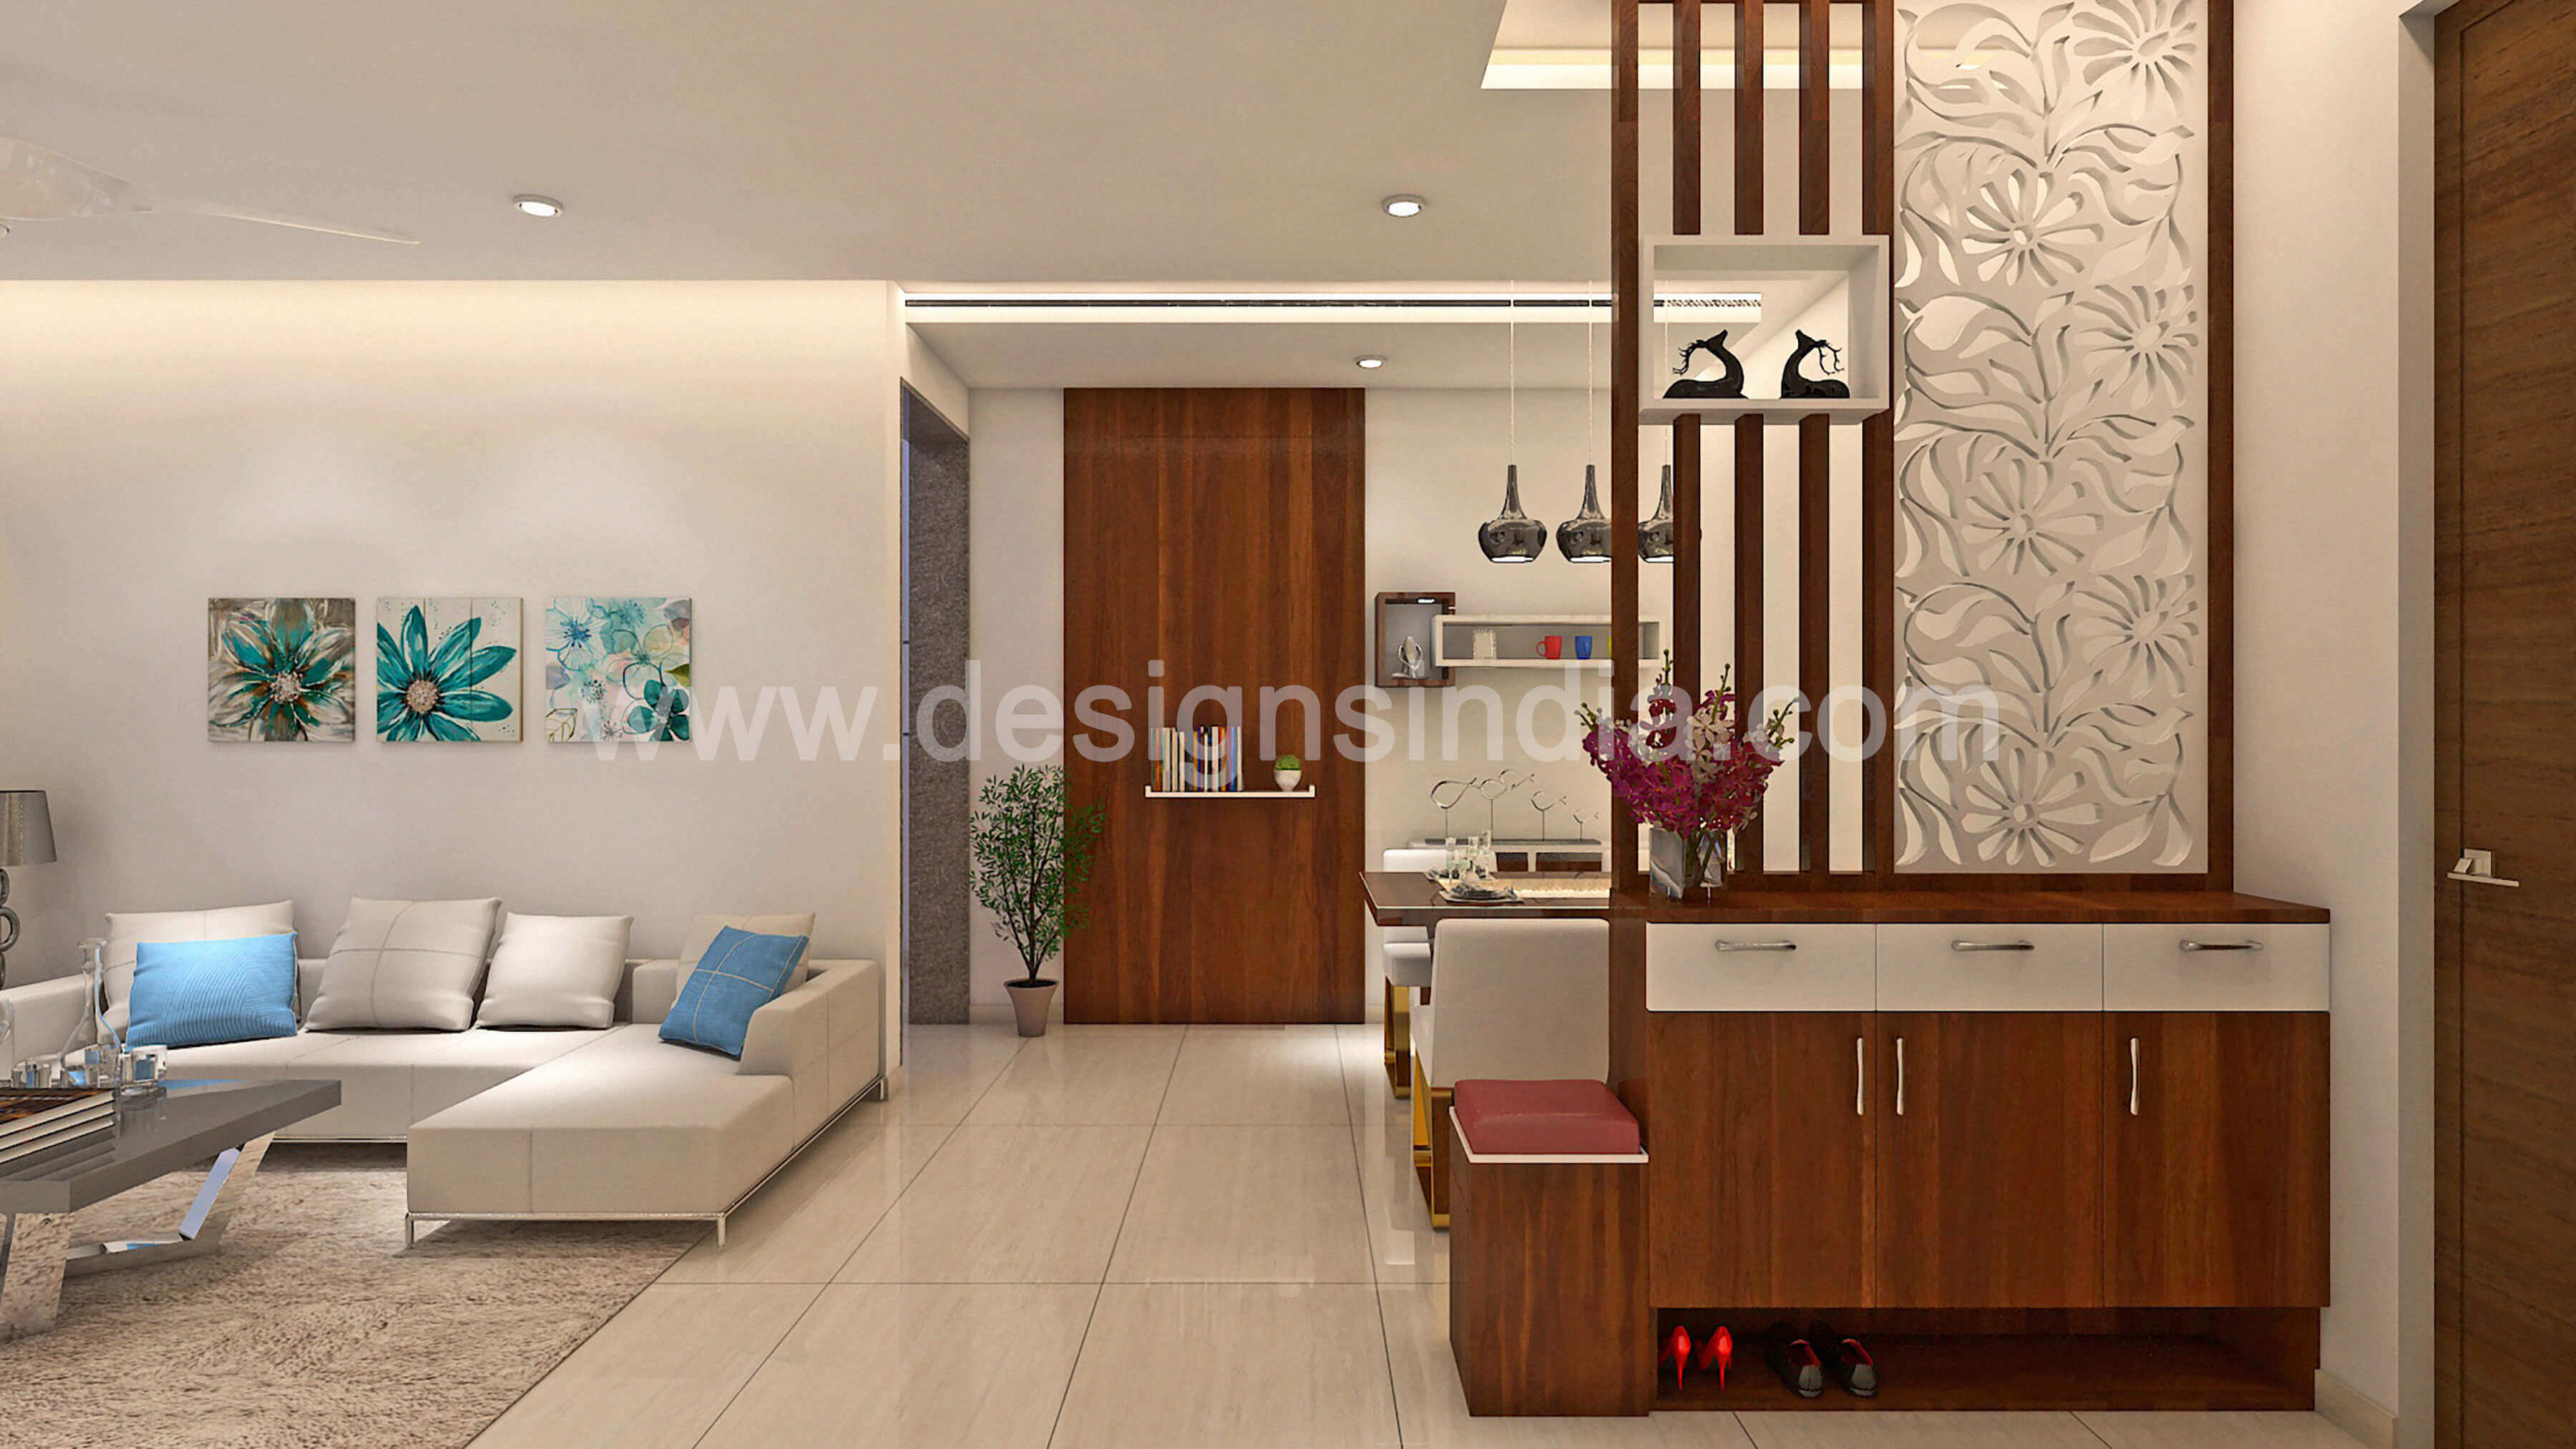 Designs India Interior Designers Home Interior Designing Residential